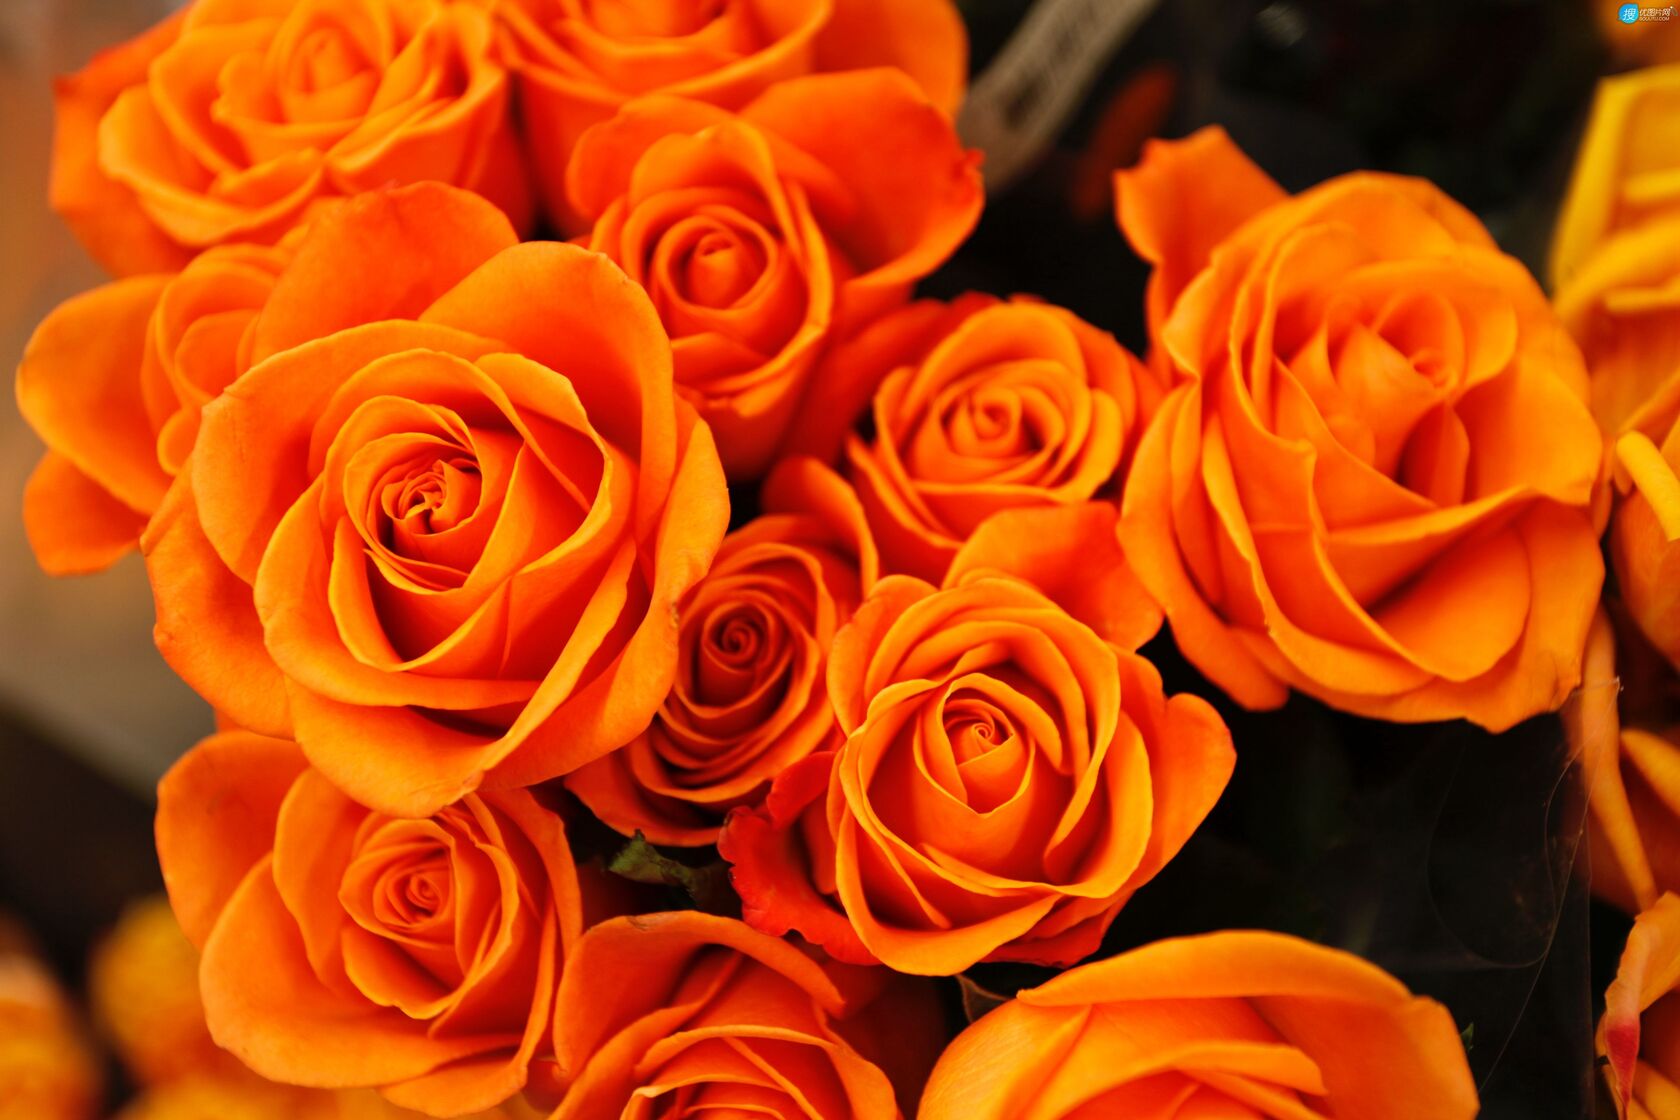 橙色的玫瑰花束壁纸图片